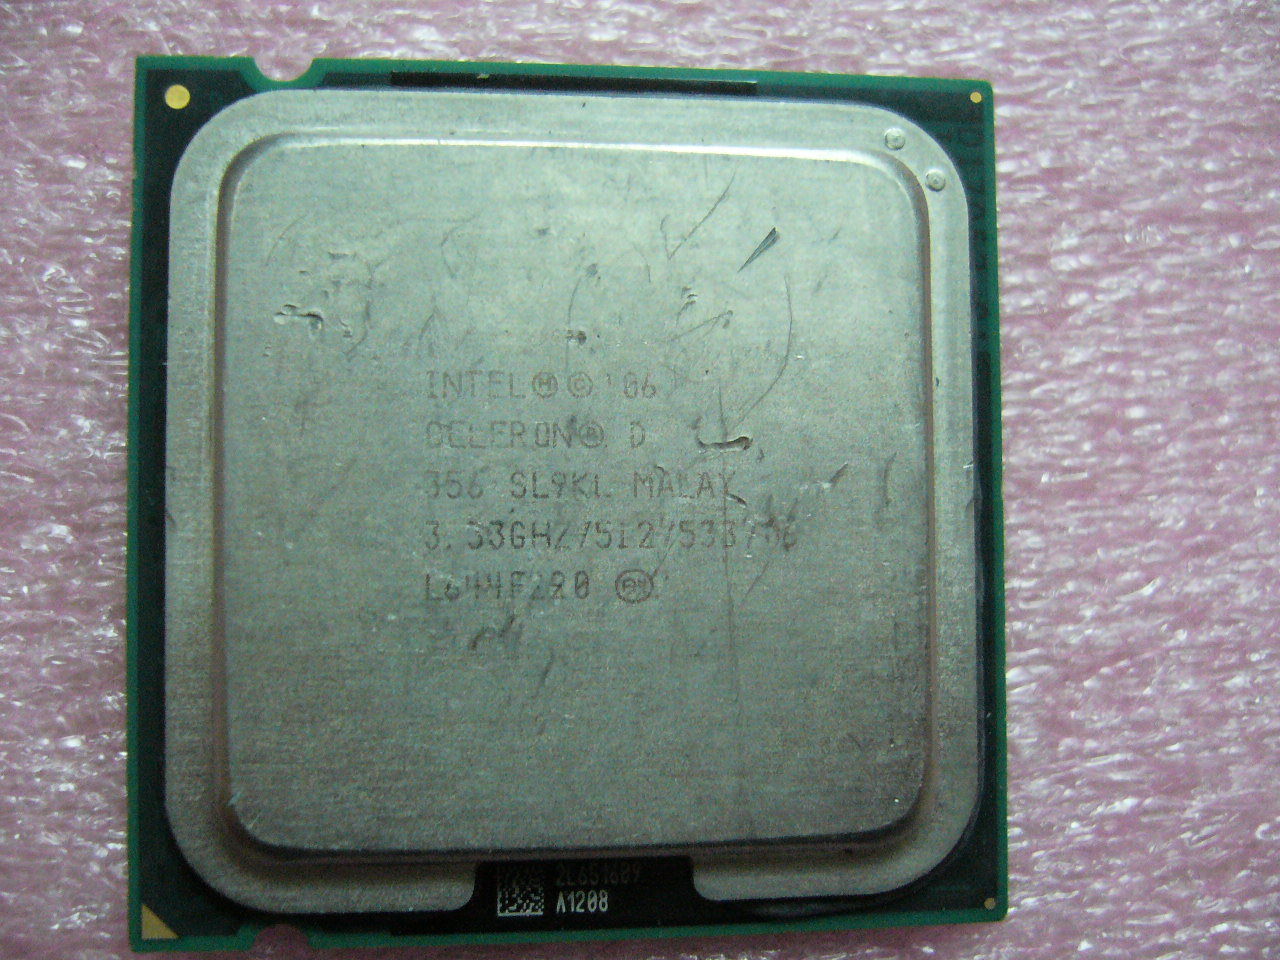 INTEL Celeron D CPU 356 3.33GHz 512/533Mhz LGA775 SL9KL - Click Image to Close